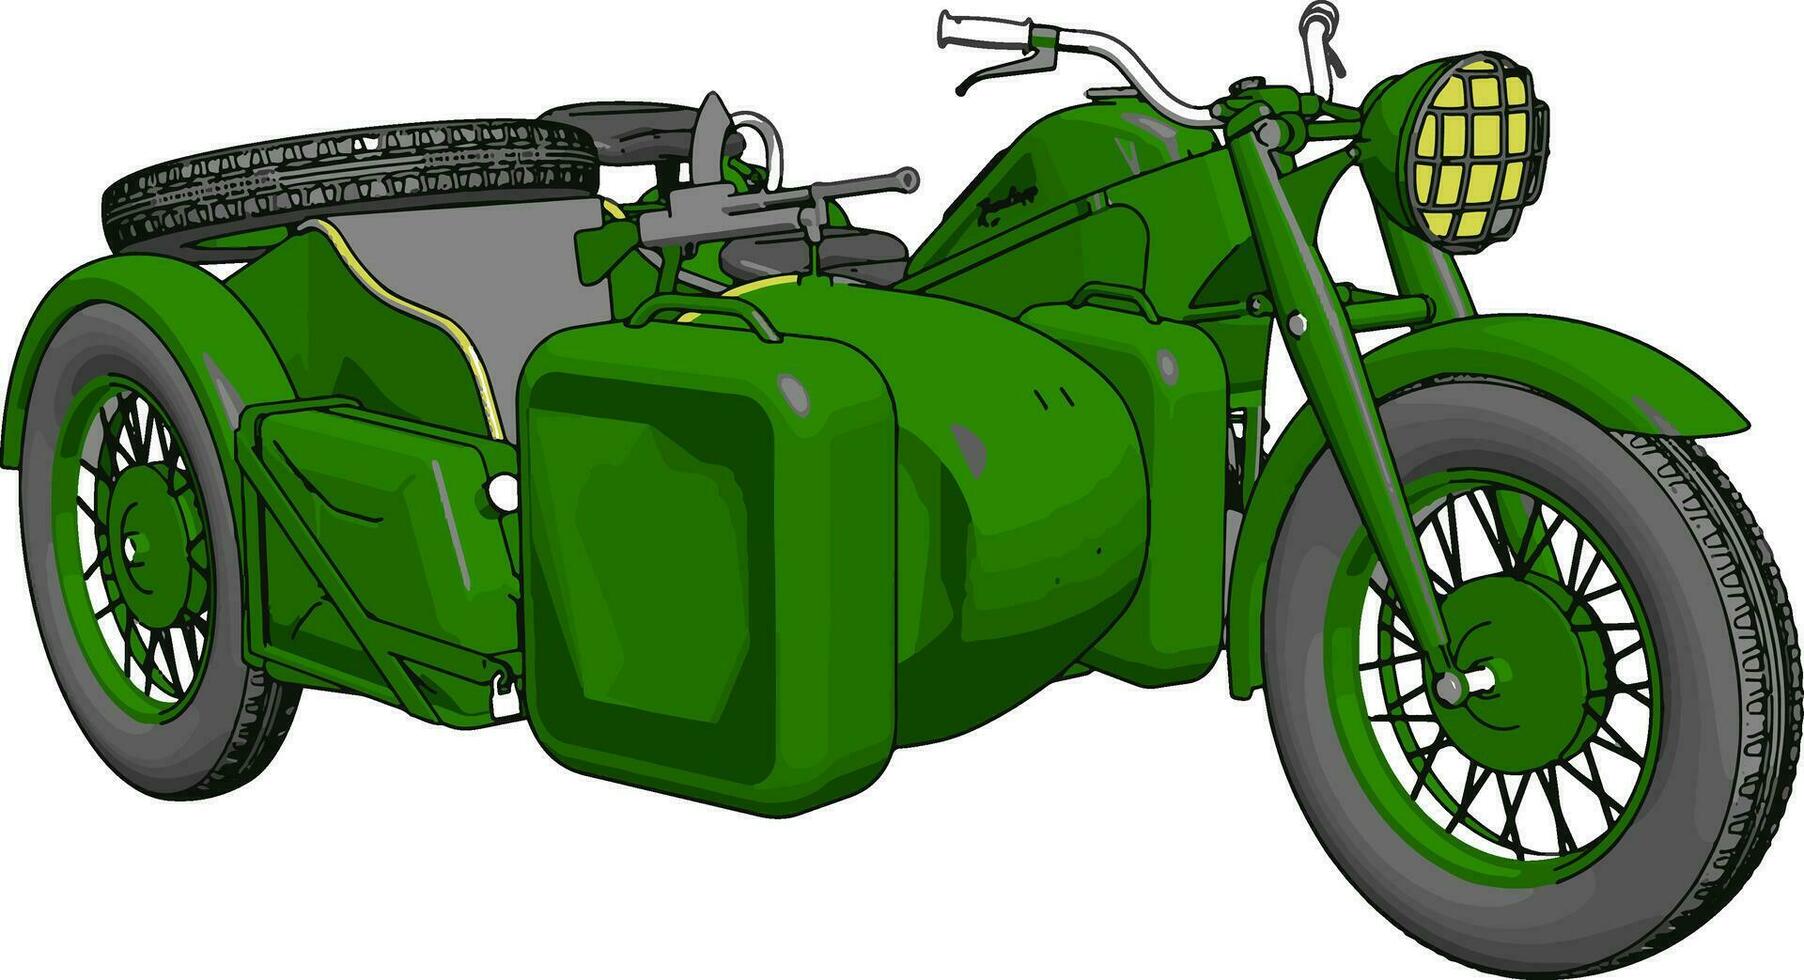 3d vektor illustration på vit bakgrund av en militär motorcykel med sidvagn